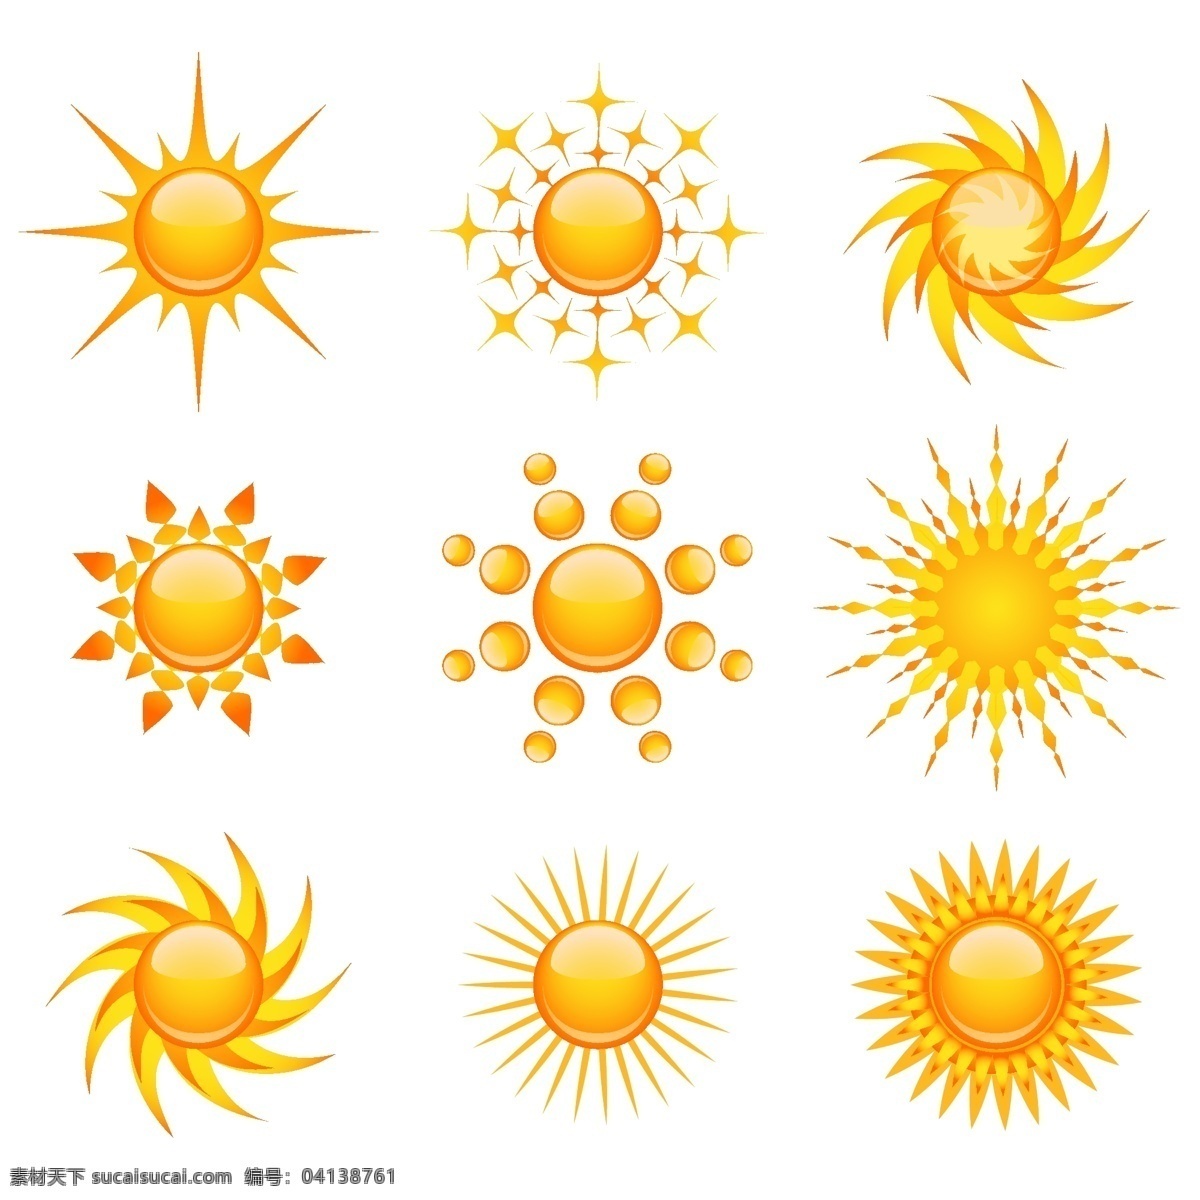 太阳图标 圆形logo 太阳logo 小太阳 太阳 阳光 圆形矢量图标 创意圆形 图标 标志图标 其他图标